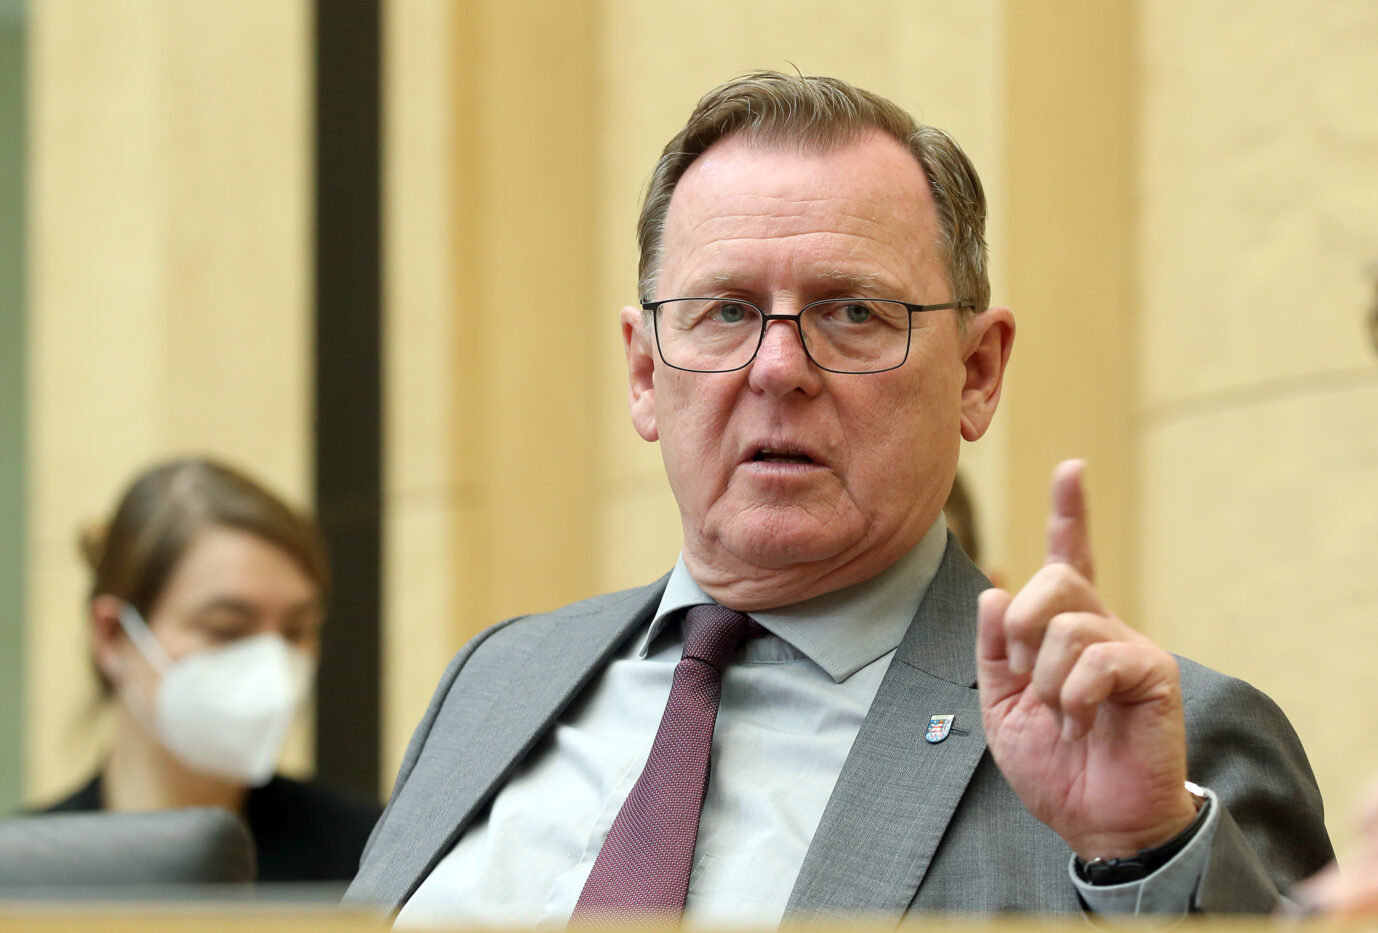 Thüringens Ministerpräsident Bodo Ramelow (Linkspartei) warnt vor einer neuen Pegida-Bewegung